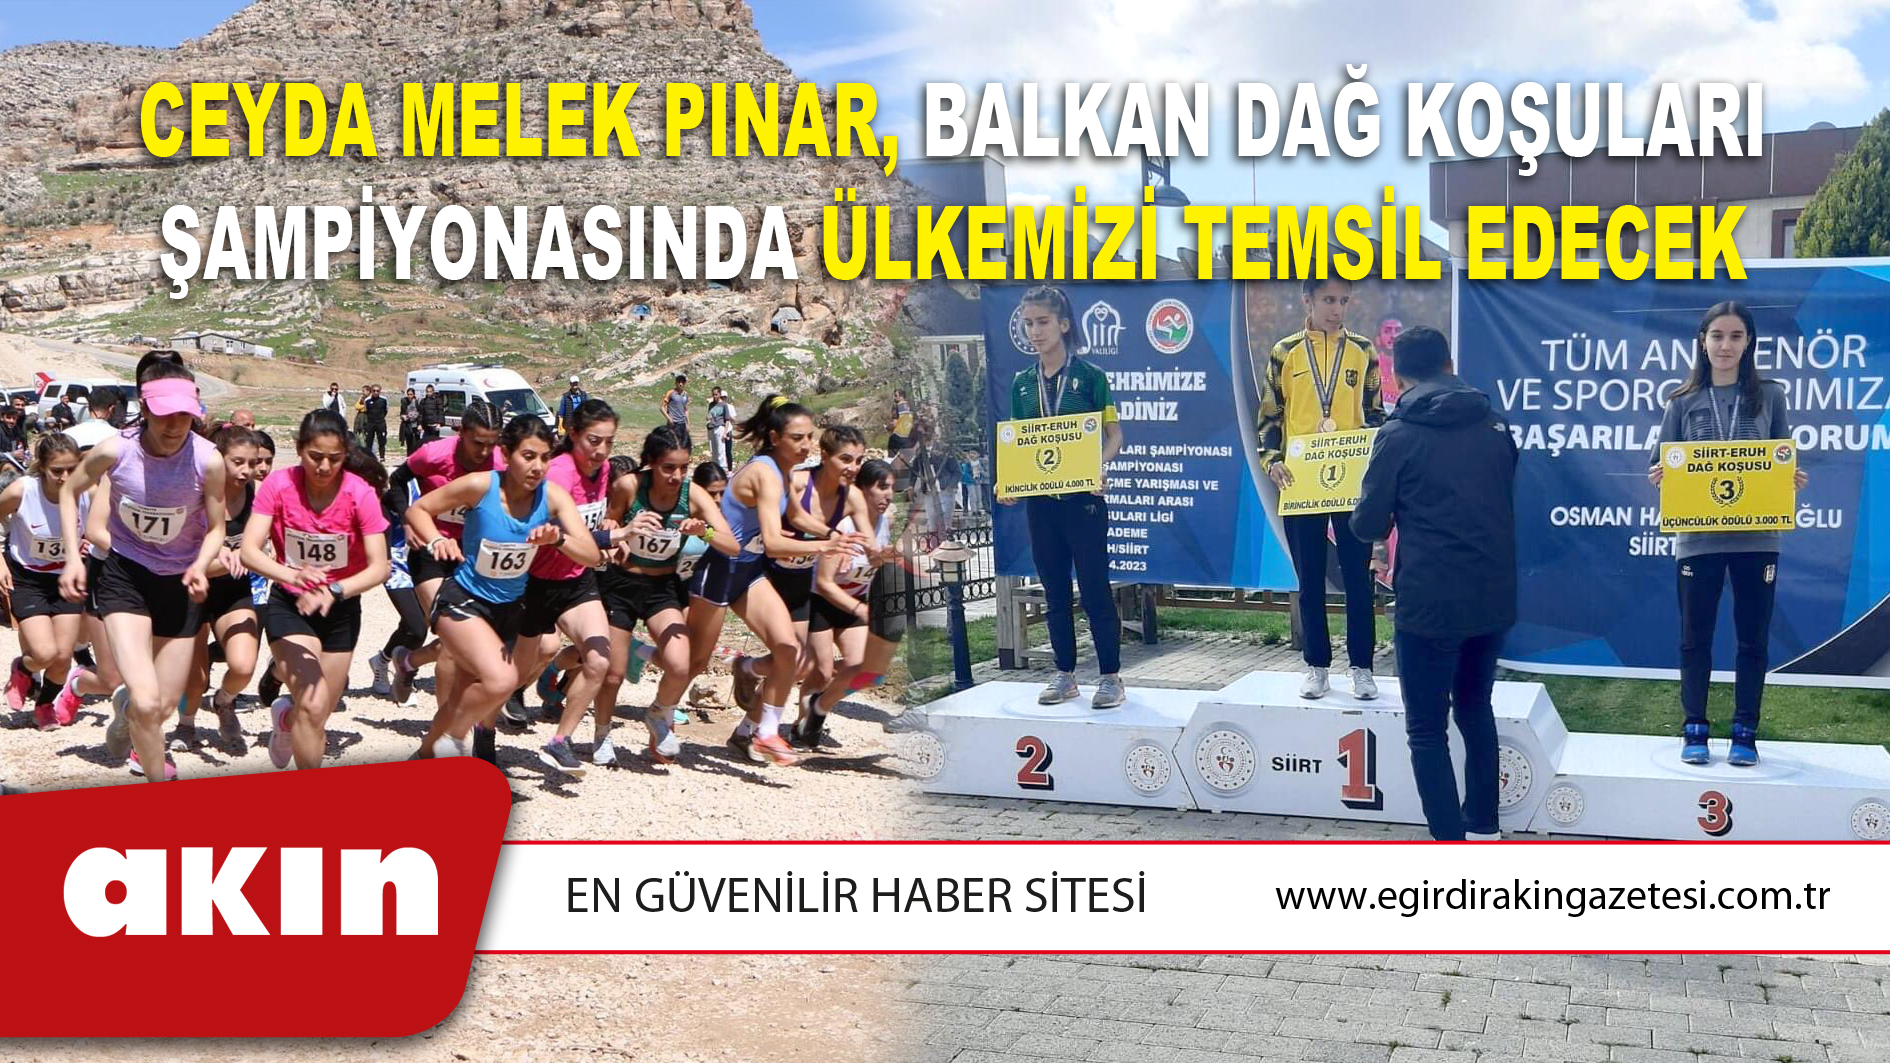 Ceyda Melek Pınar, Balkan Dağ Koşuları Şampiyonasında Ülkemizi Temsil Edecek